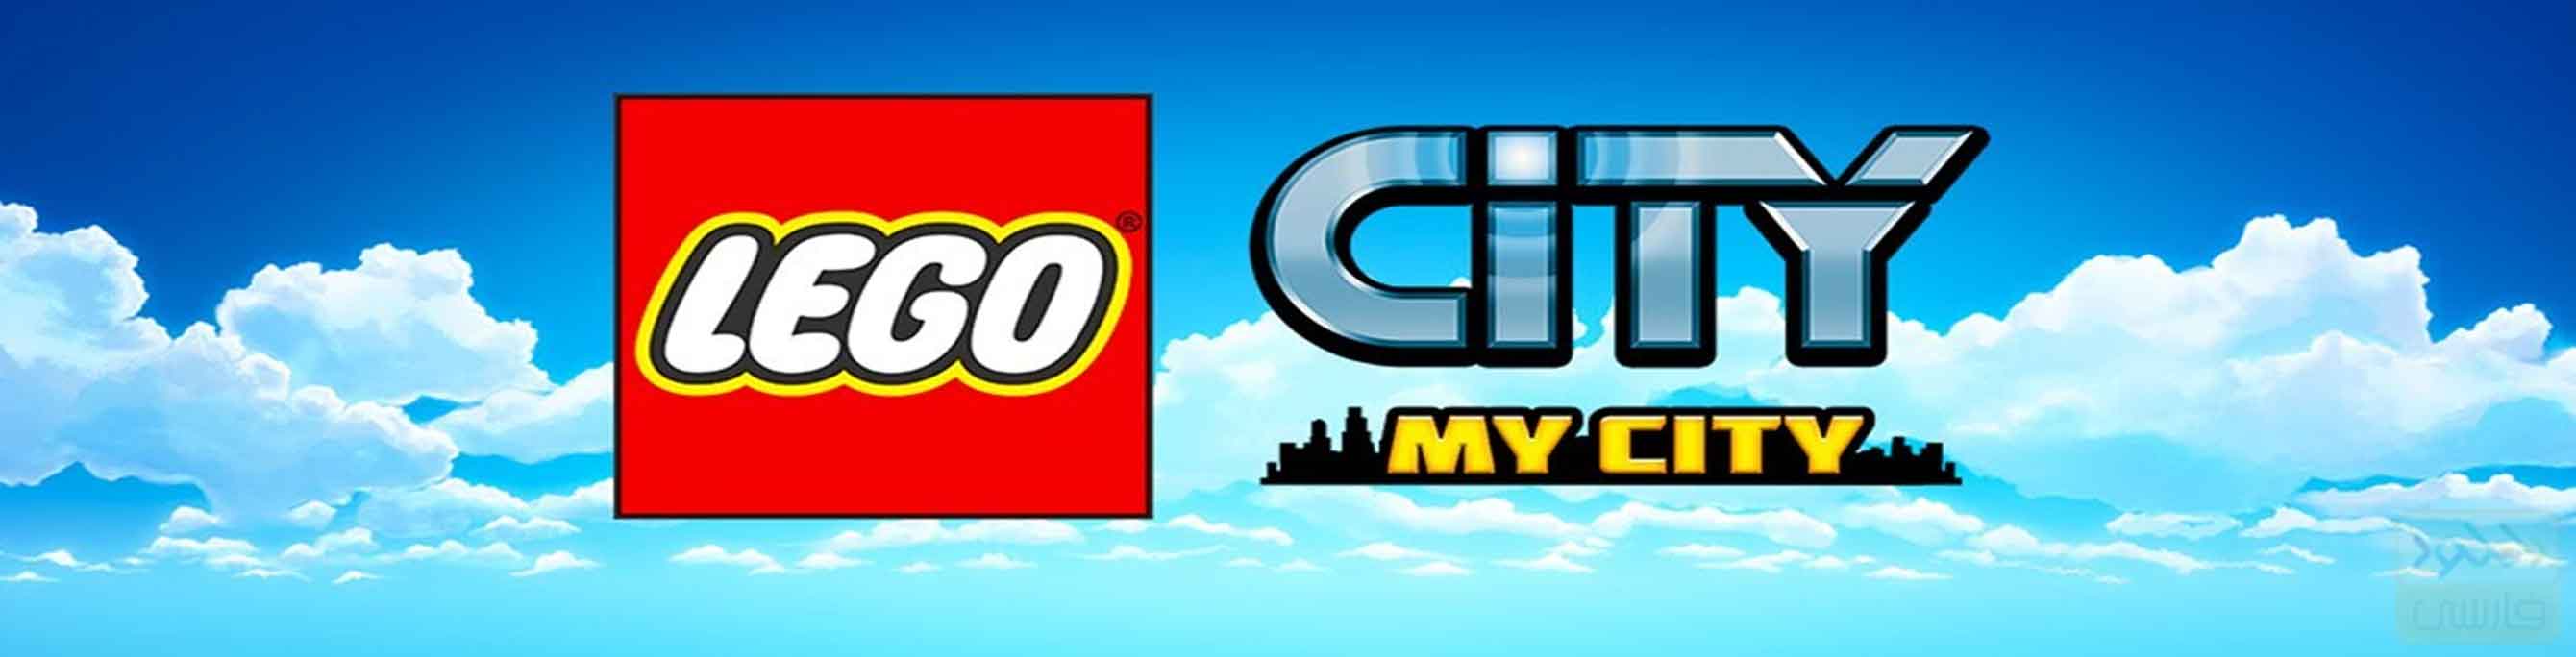 دانلود بازی LEGO City My City برای اندروید و آیفون